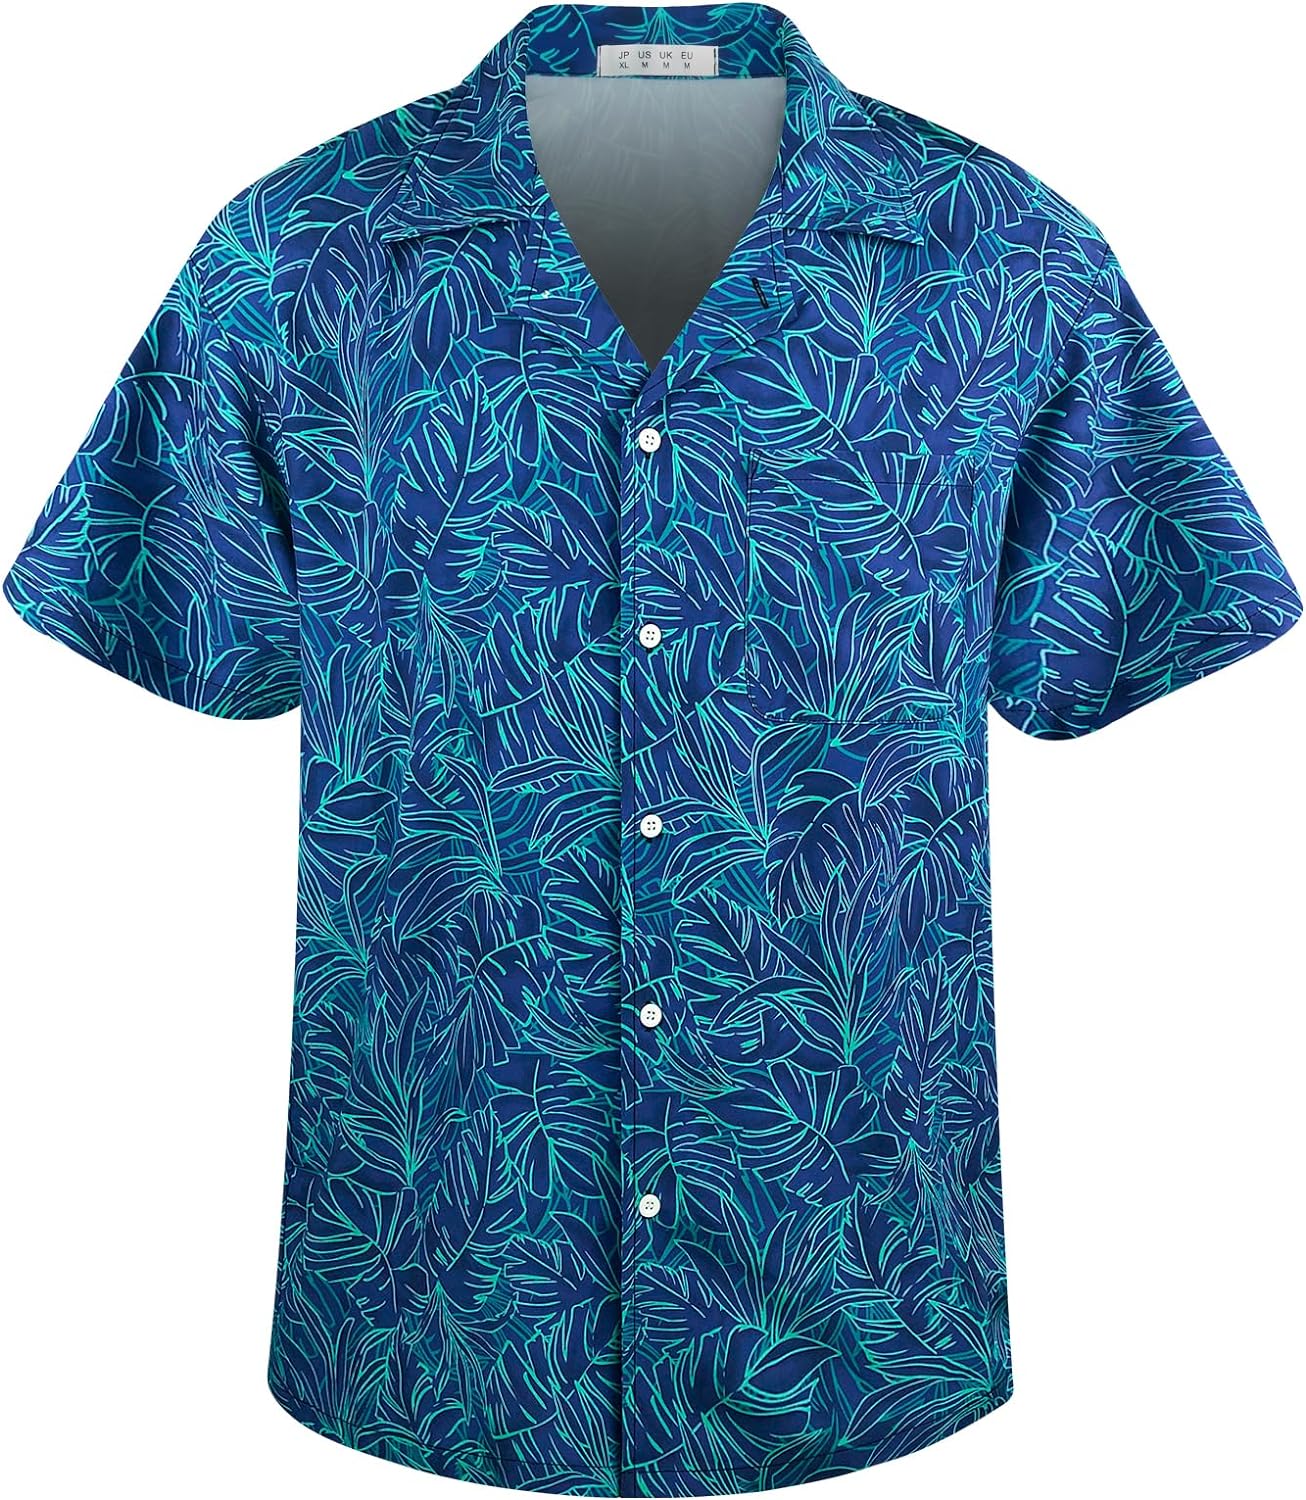 AINIKO Mens Short Sleeve Hawaiian Shirt Loose Fit, Floral Print Tropical Cruise Beach Button Down Aloha Shirt